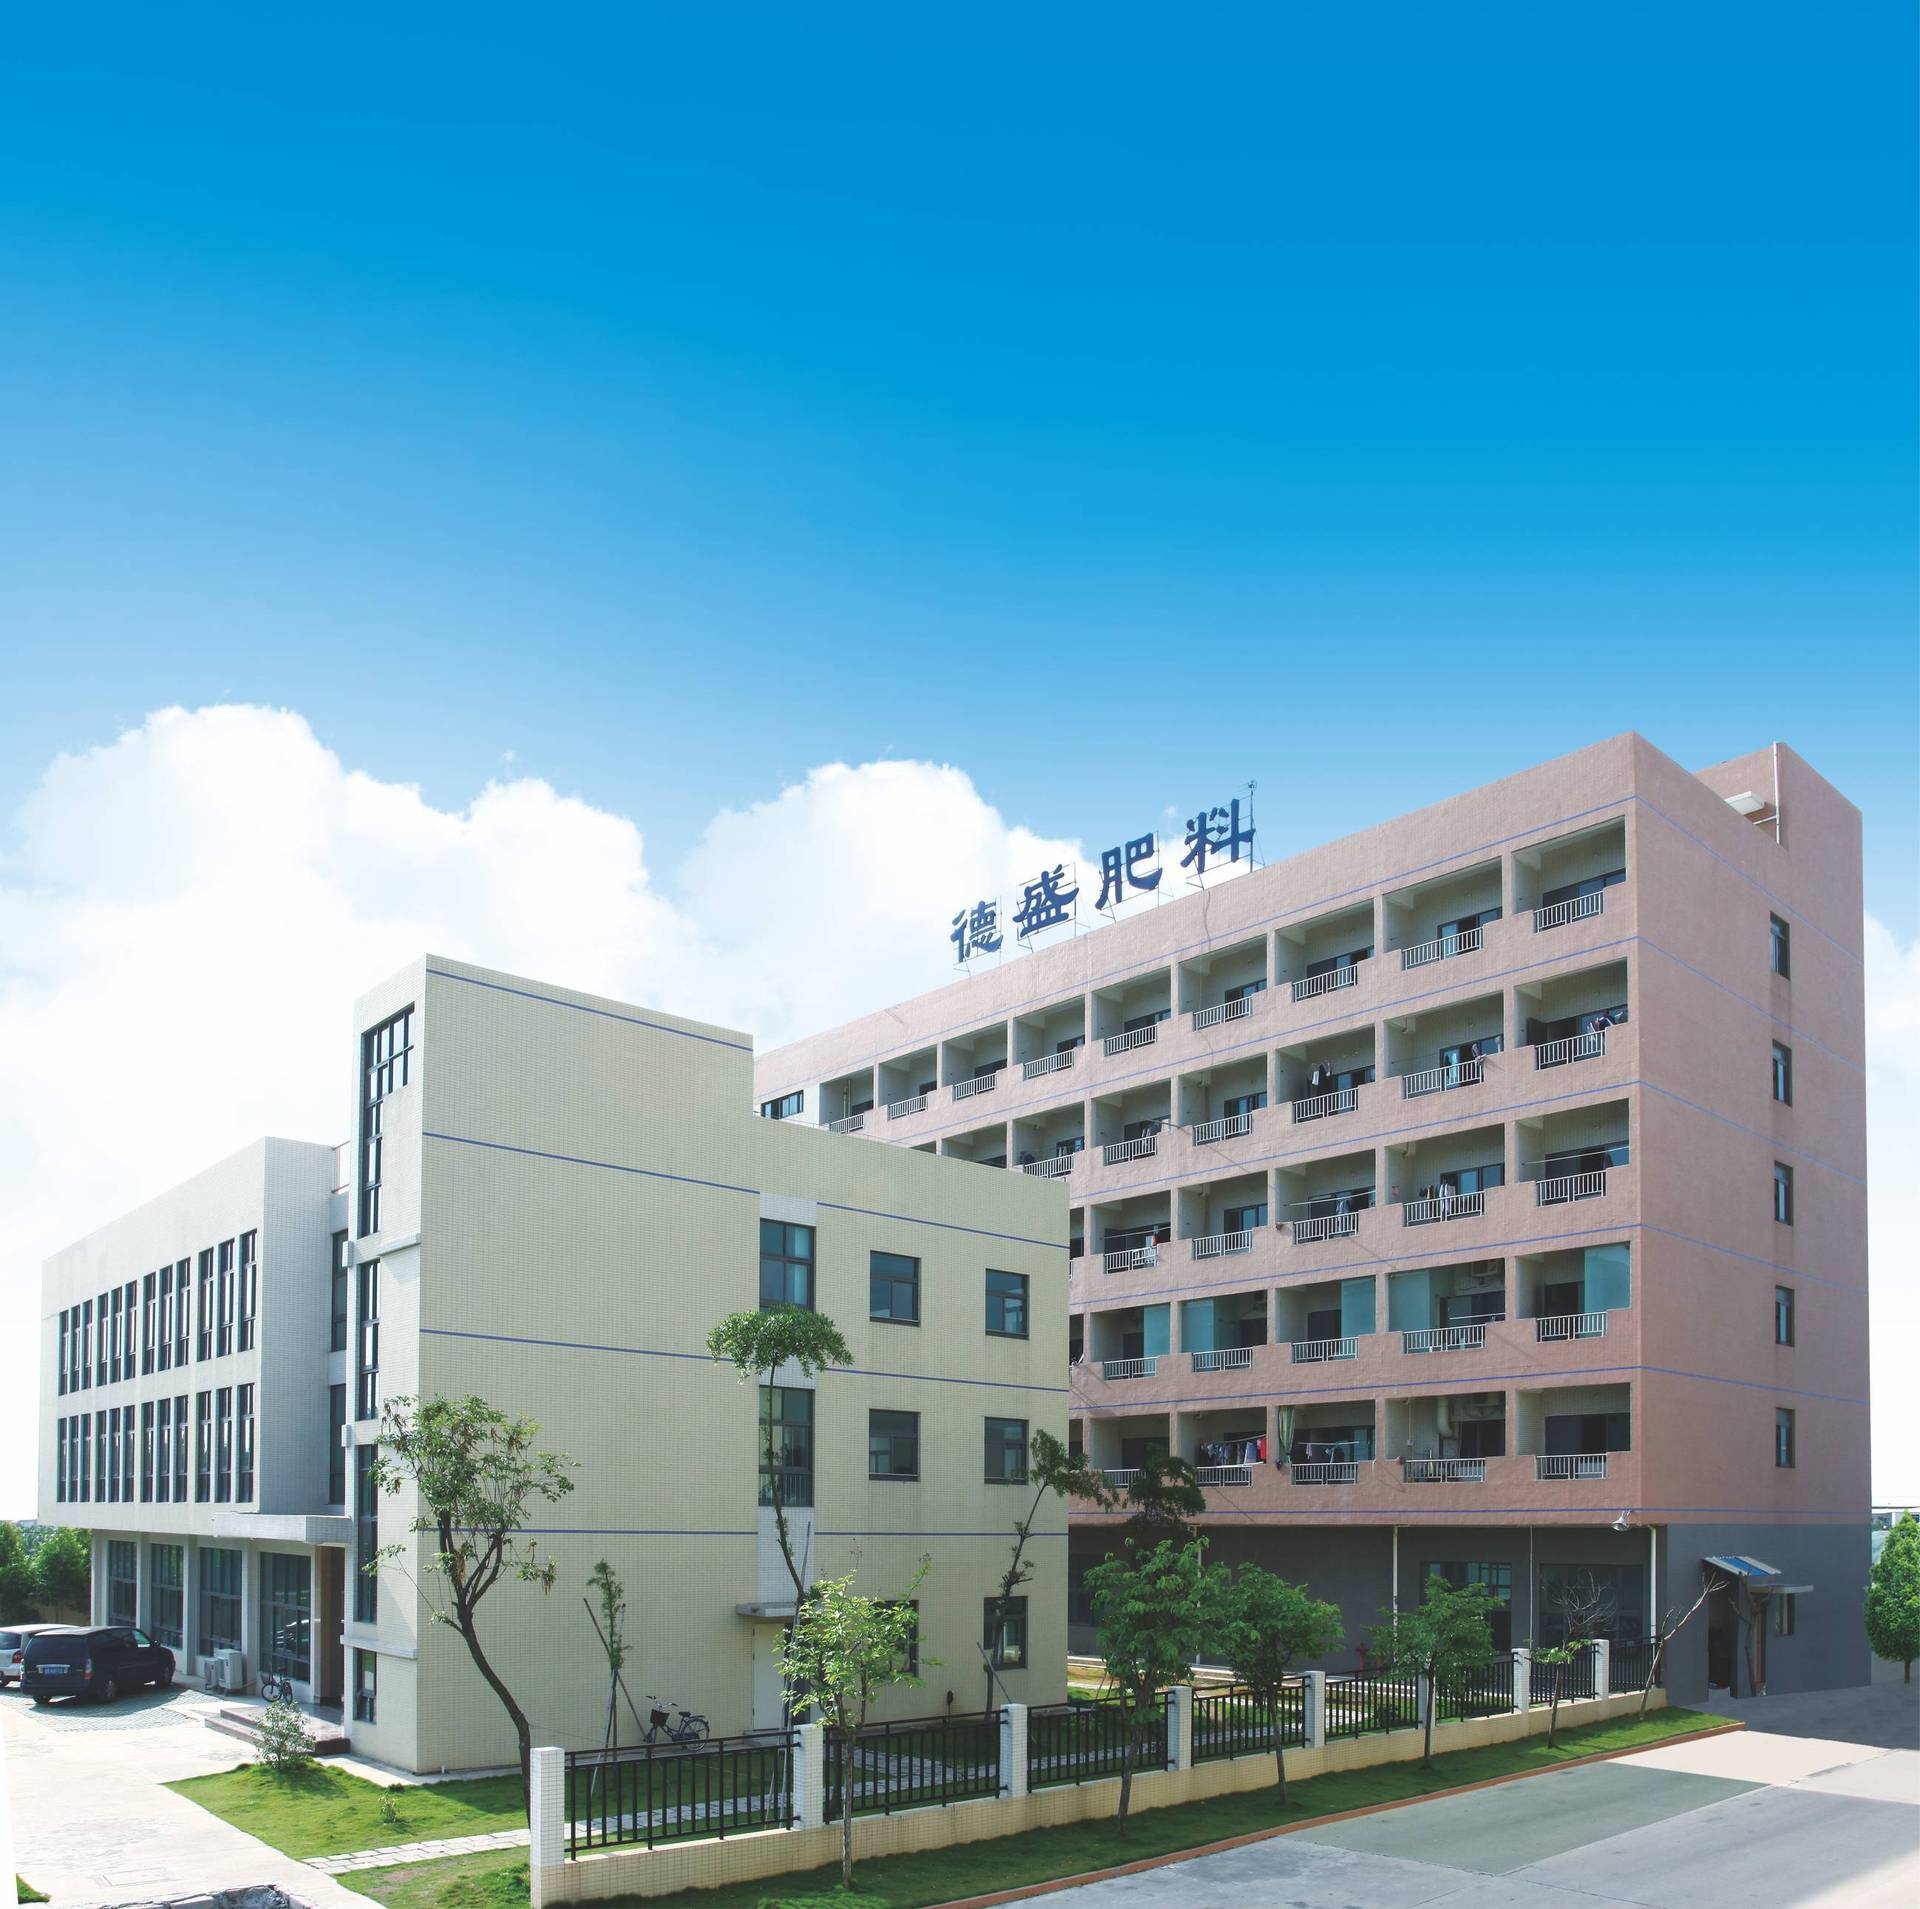 Dongguan Desheng Fertilizer Technology Co., Ltd